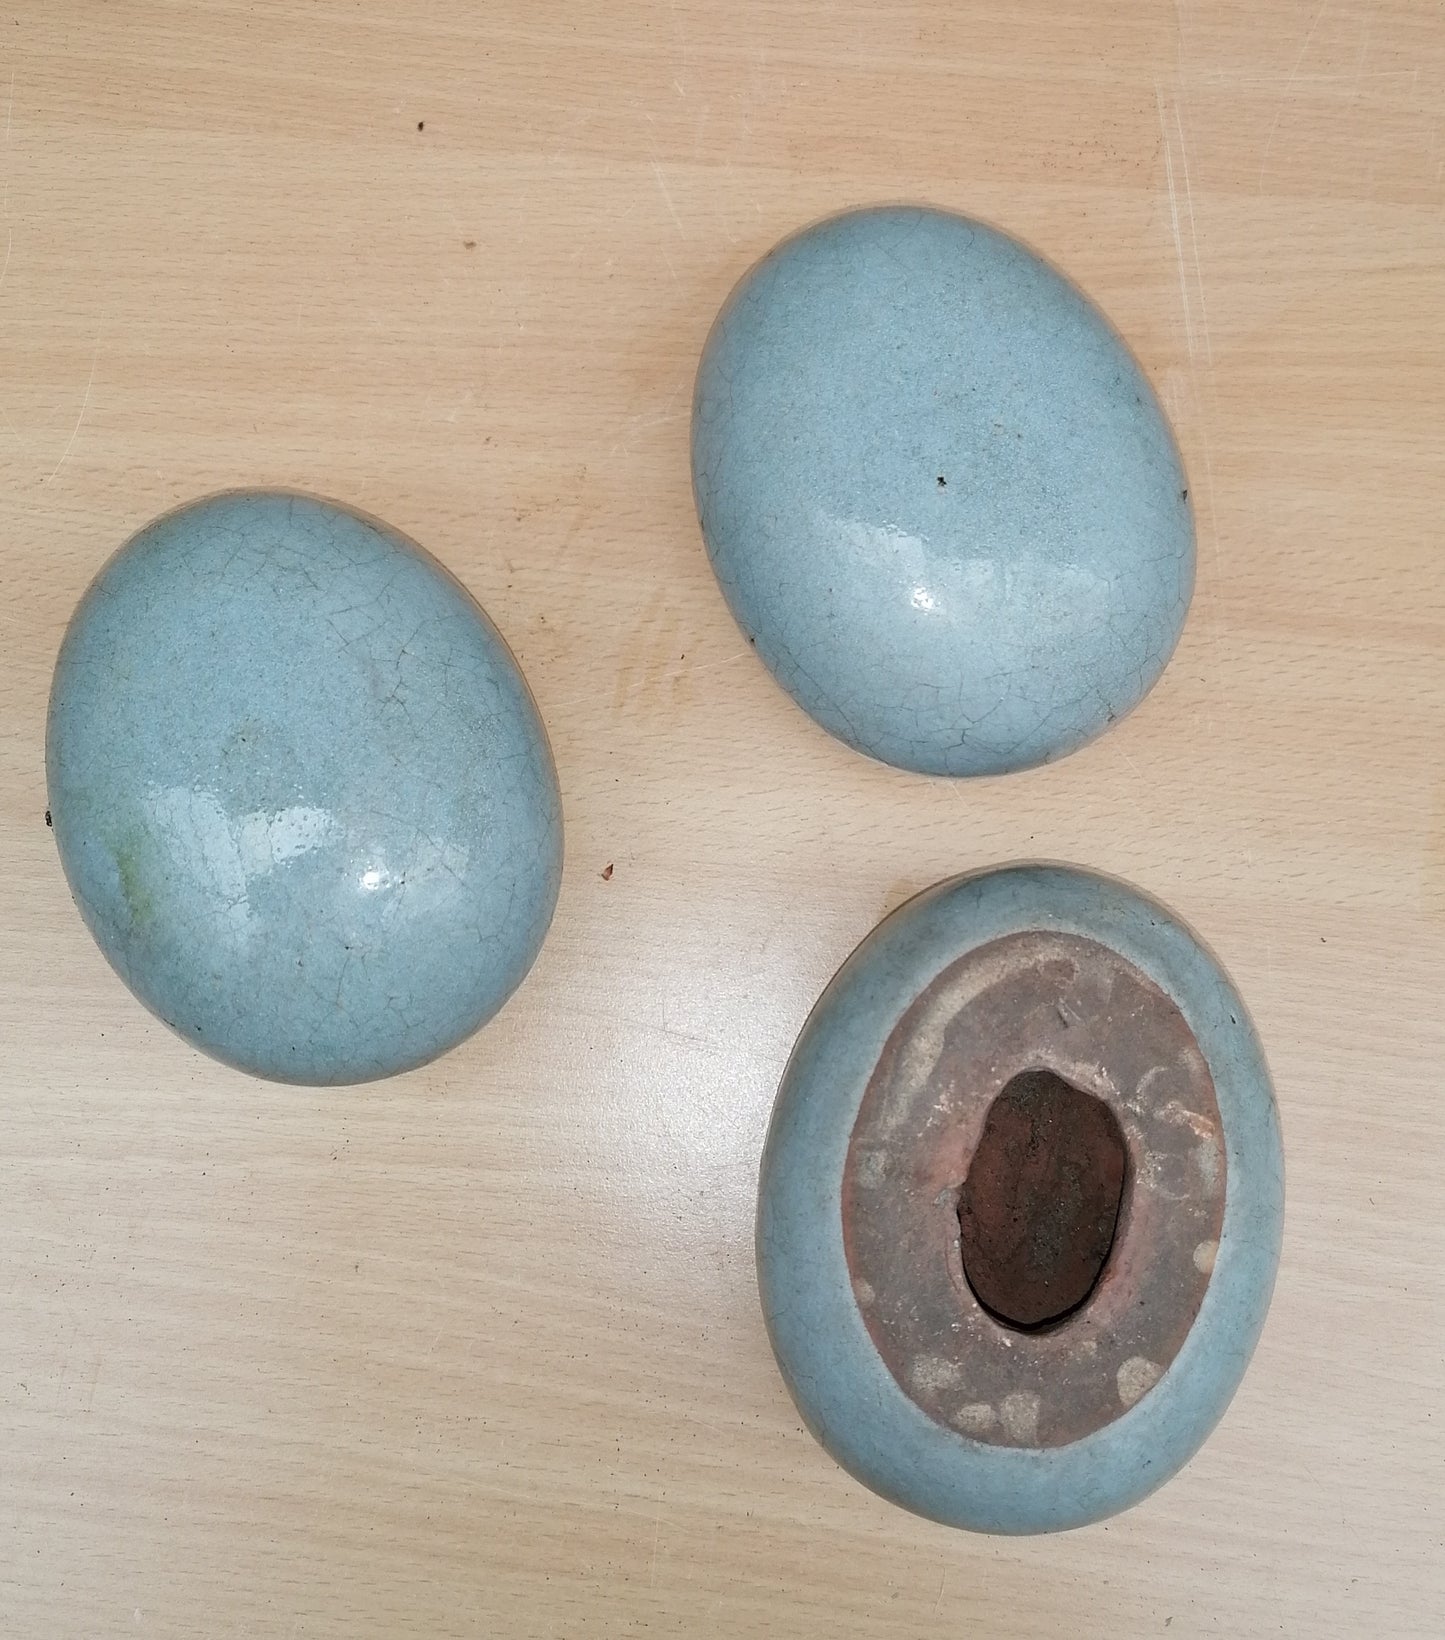 NEU !! 3er Set kleine ovale Eier - Steine aus frostfesten doppeltglasierten hellgrauen Steinzeug  Dekoration